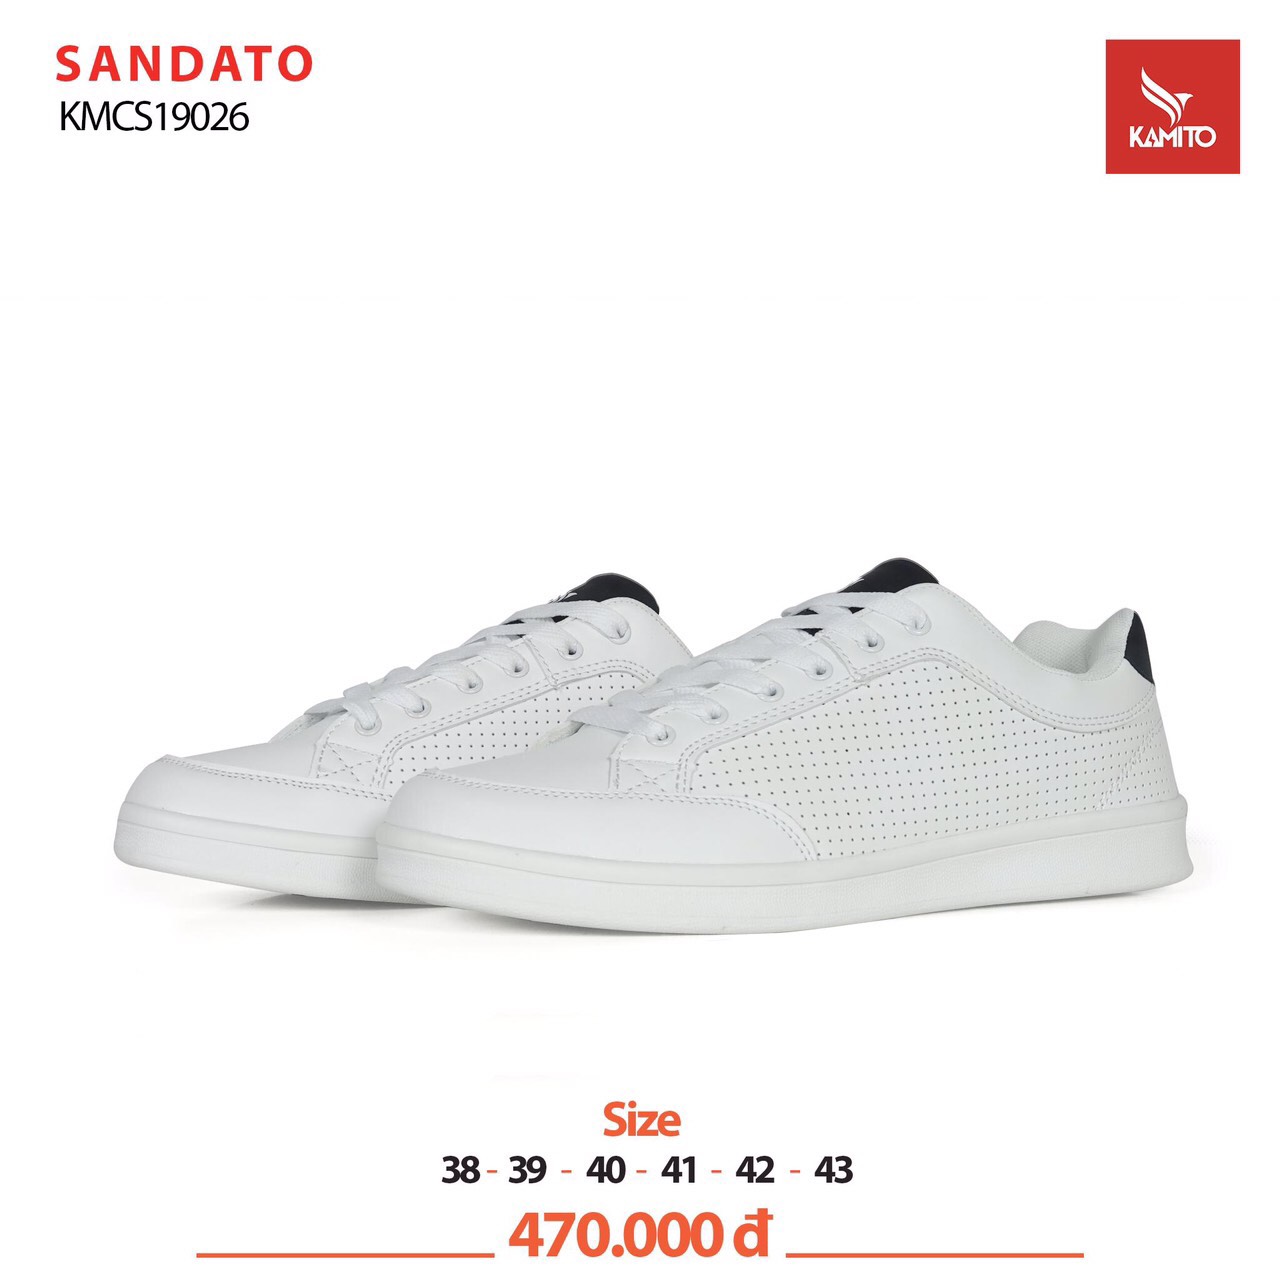 Giày thể thao Kamito SANDATO